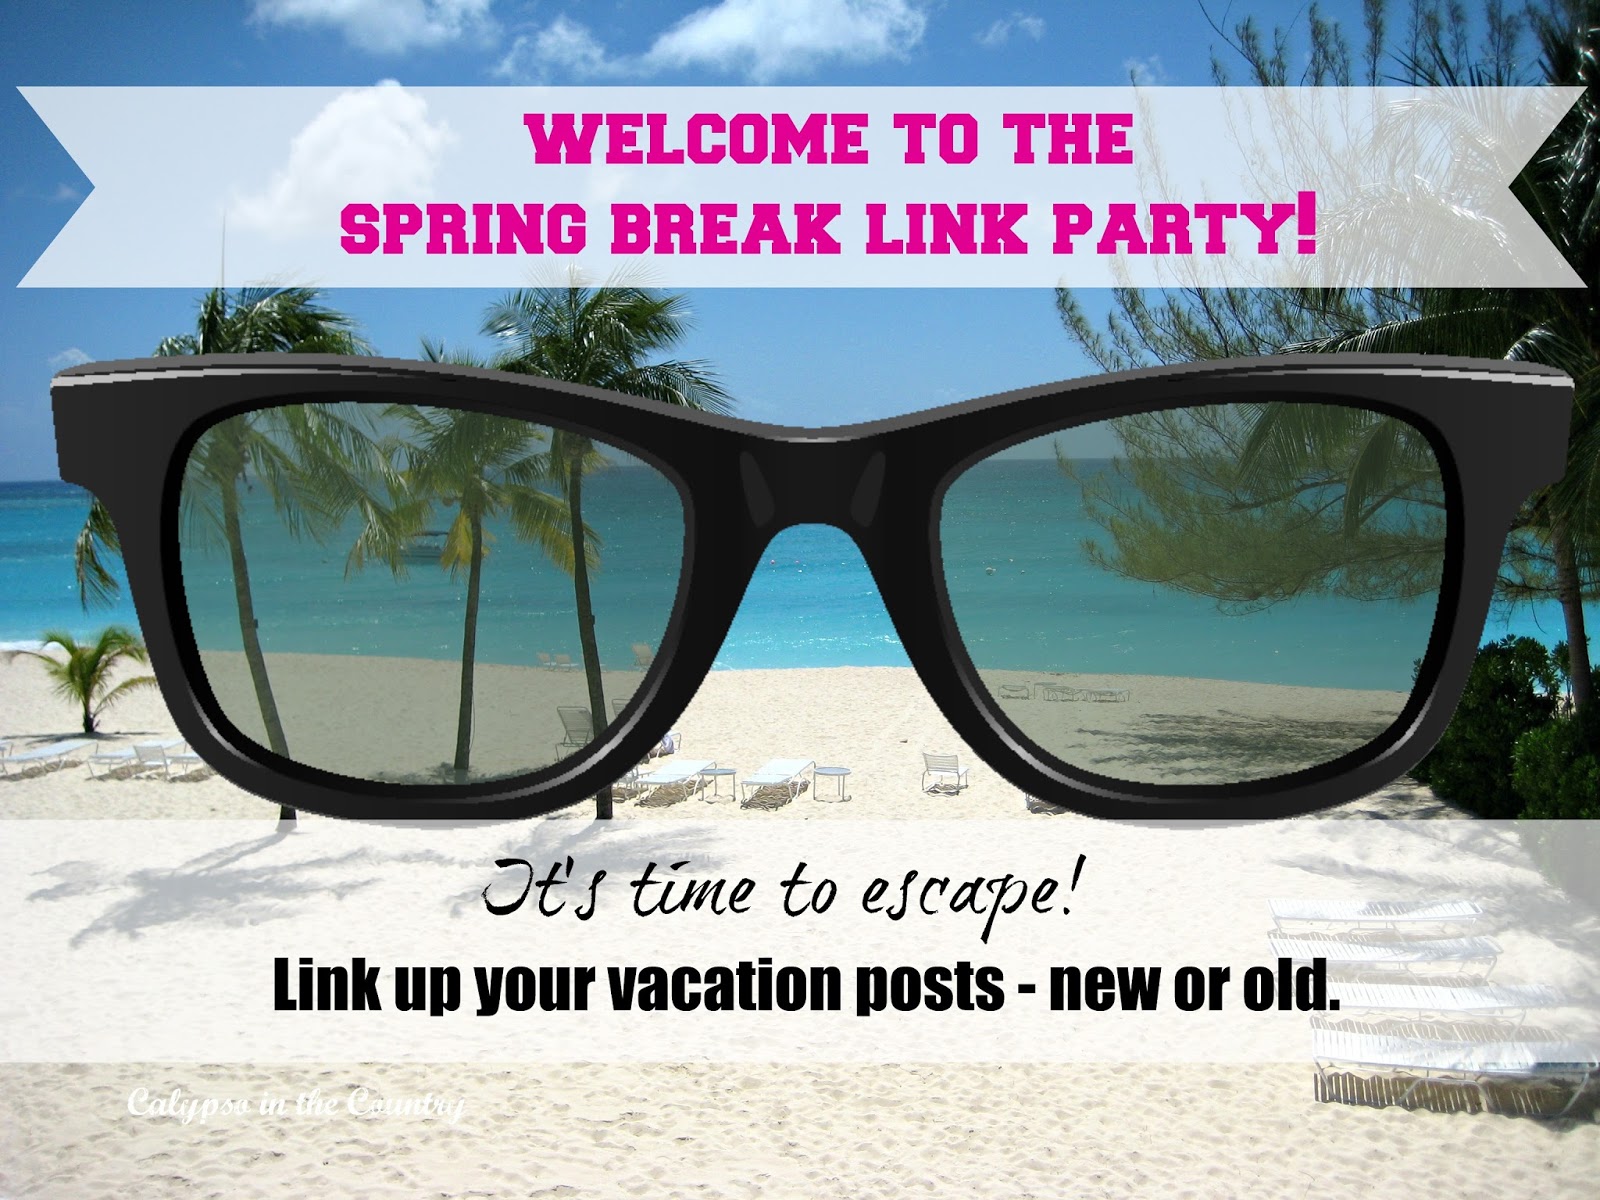 Spring Break Link Party - Link up vacation posts until April 25, 2016